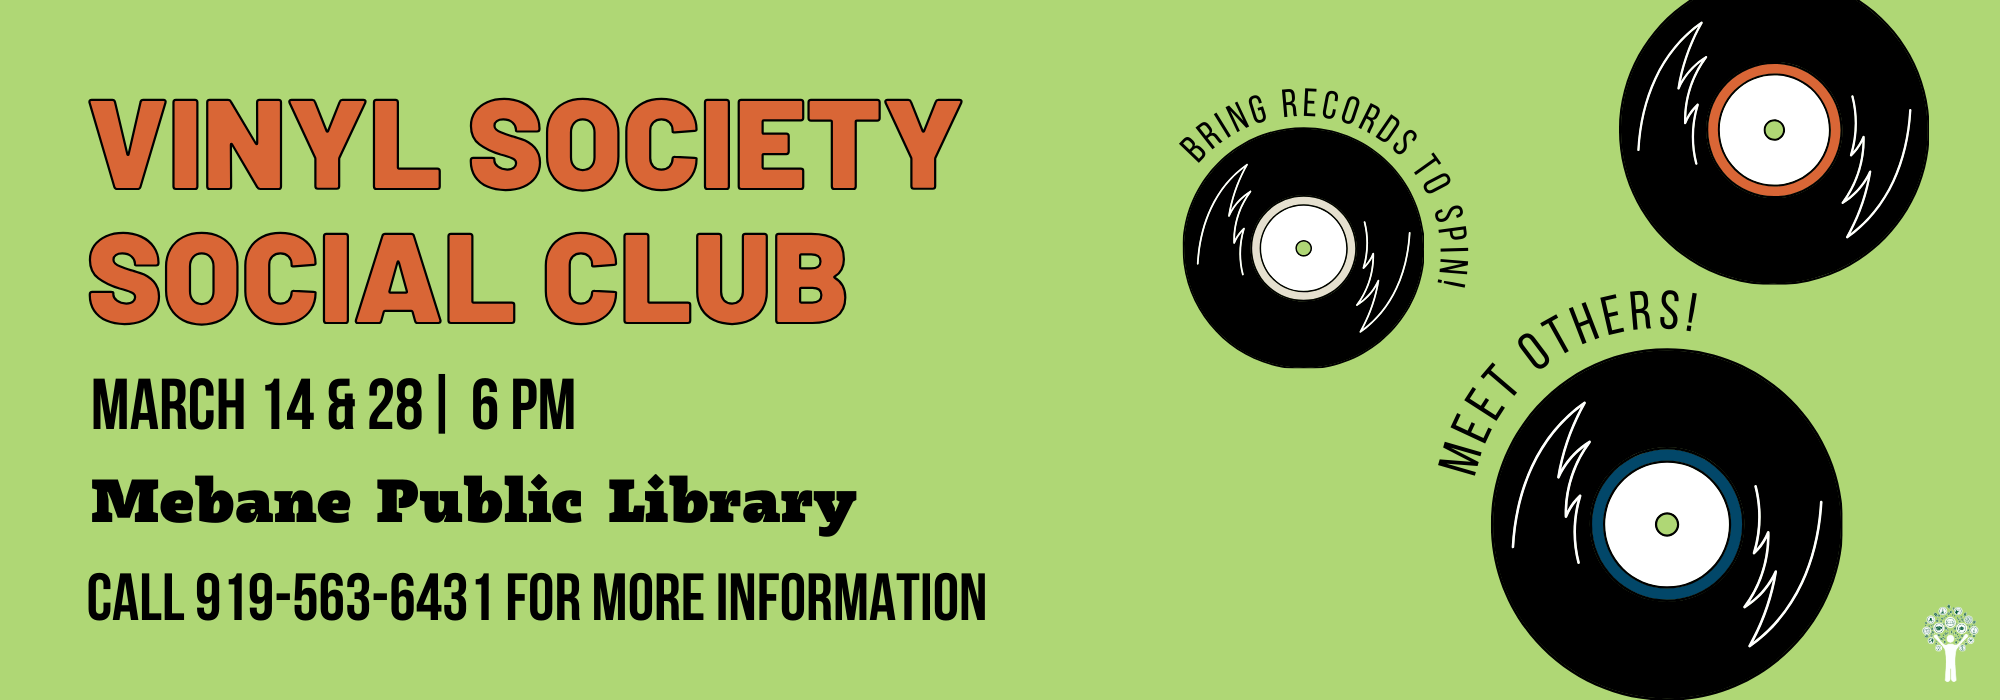 3.14 & 3.28 at 6 pm - Vinyl Society Social Club at Mebane